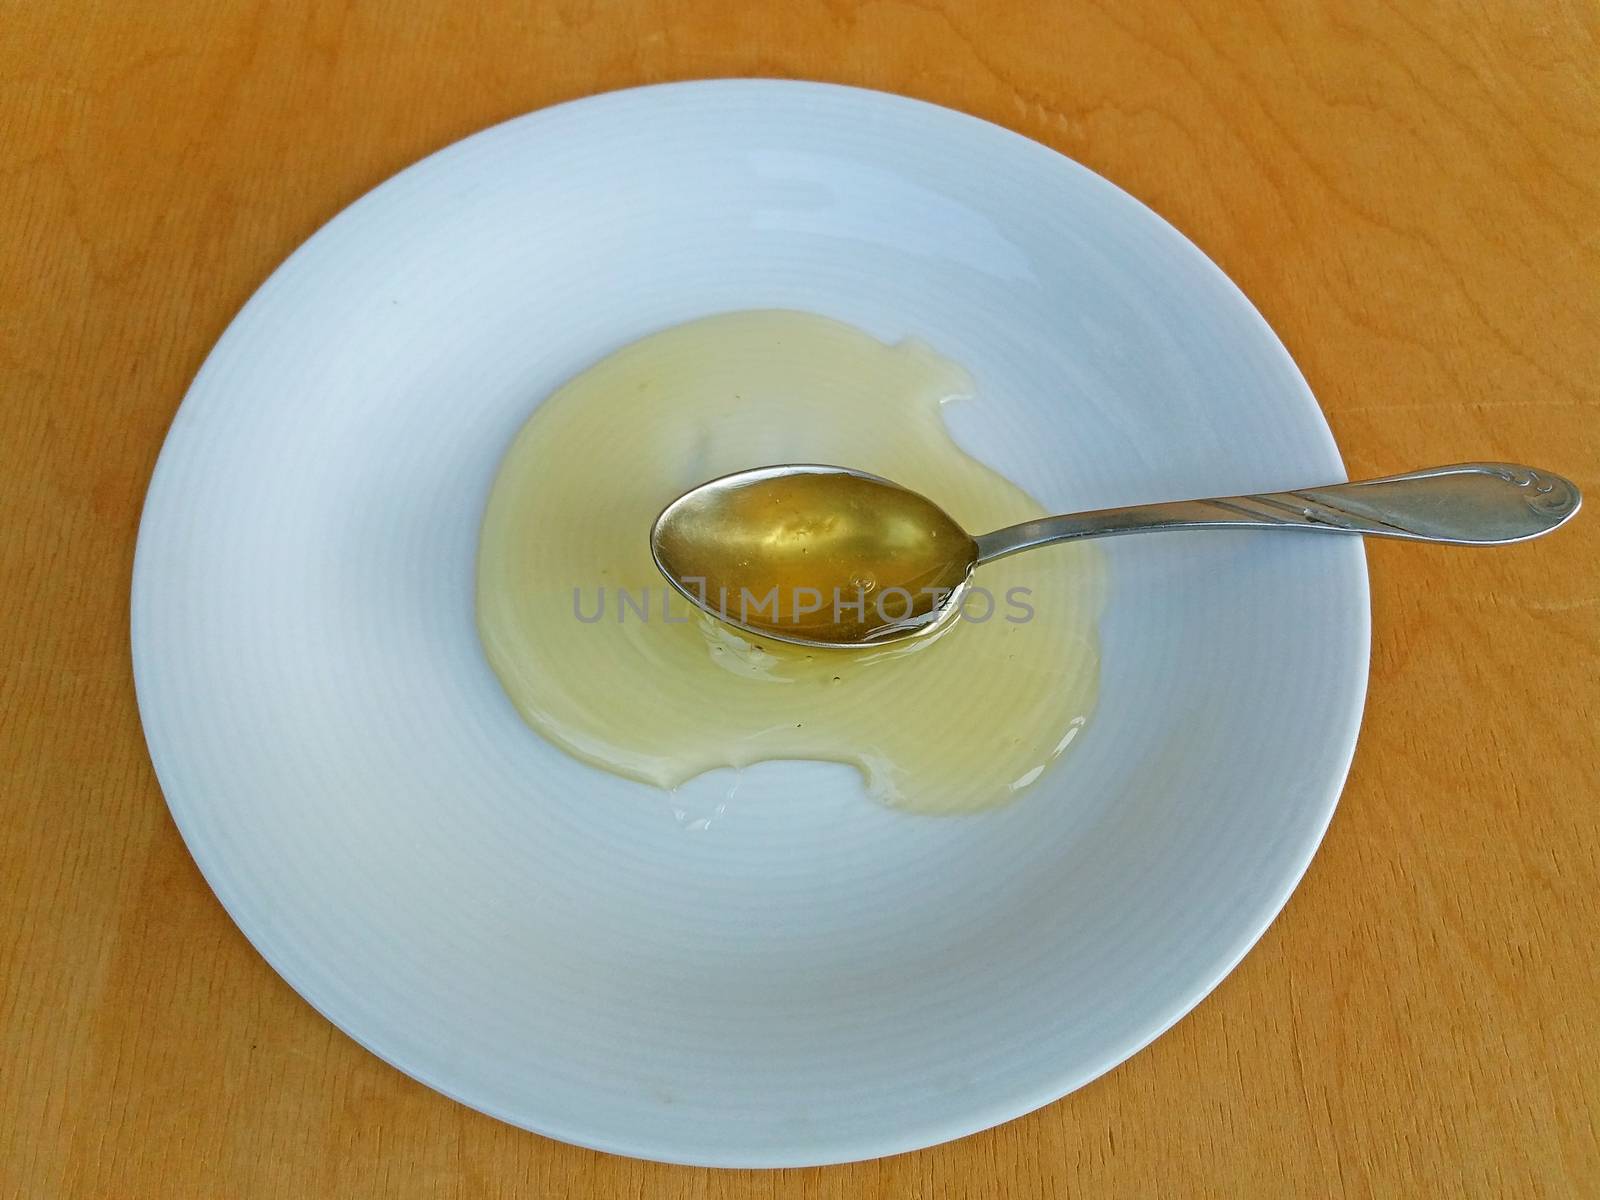 A teaspoon of a fresh honey good for health